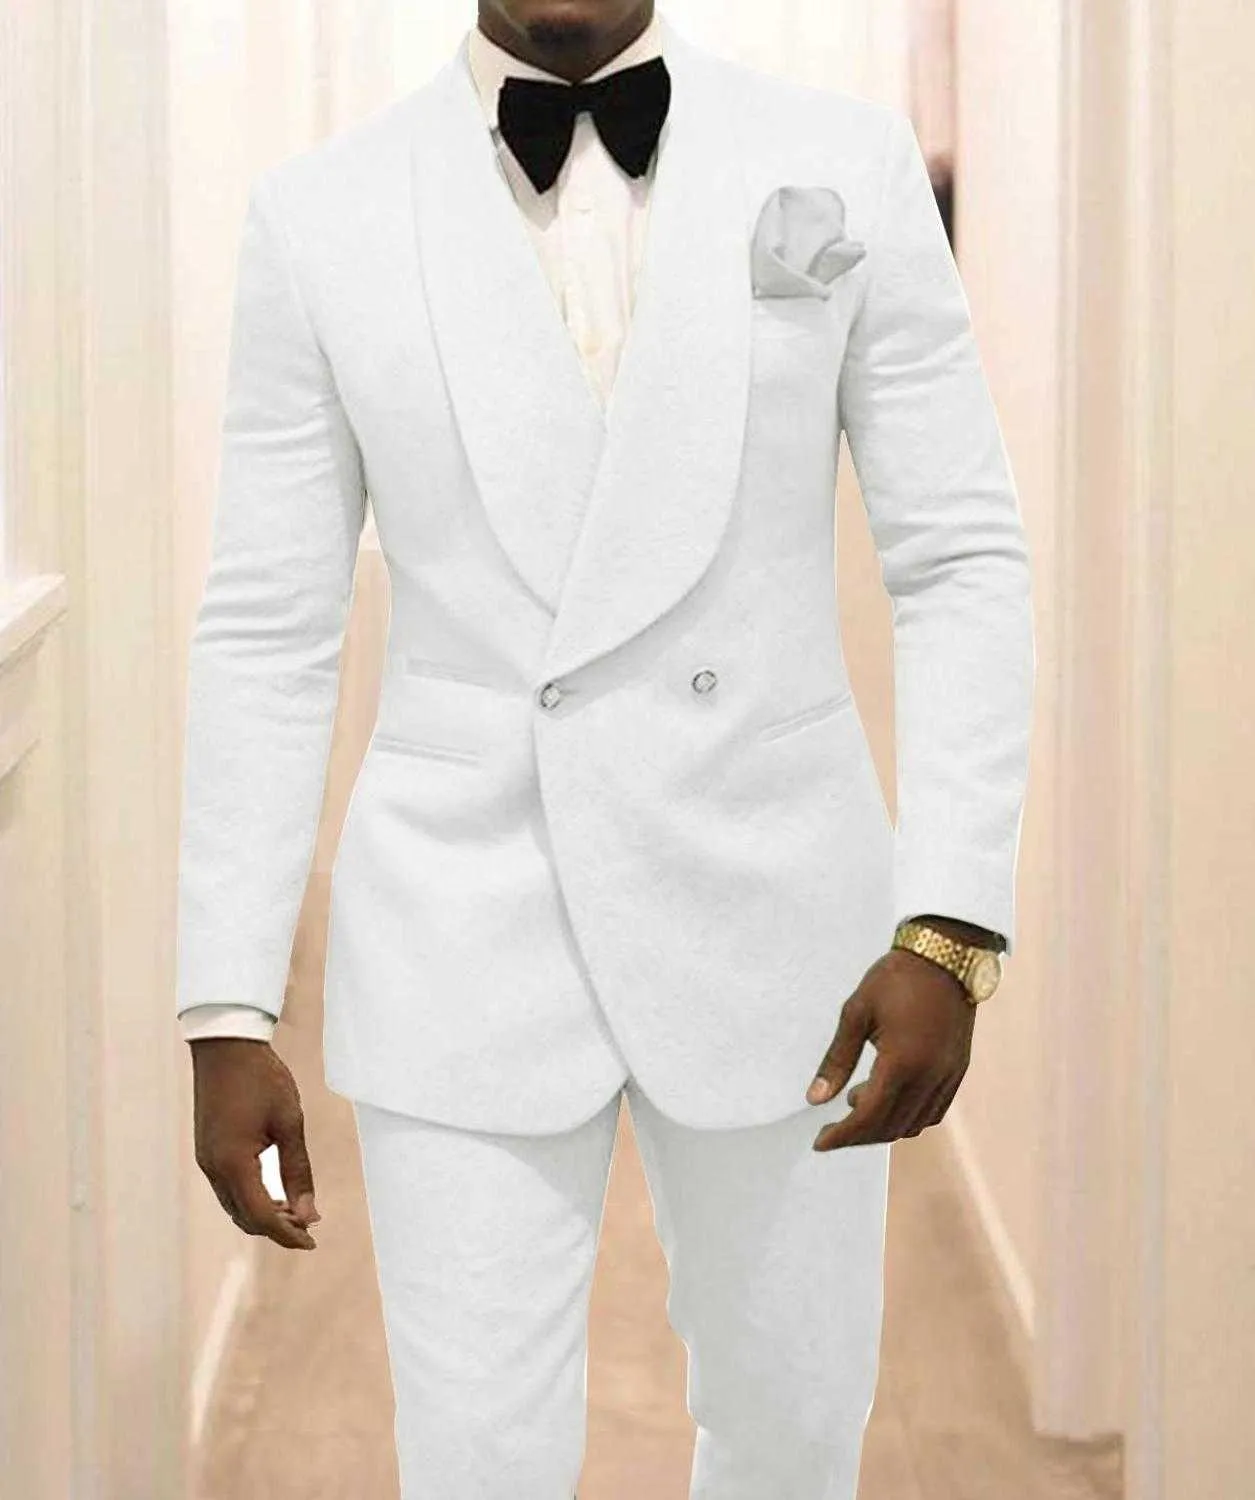 Custom Feito Groomsmen Branco Padrão Noivo TuxeDos Xaile Lapel Homens Suits 2 Peças de Casamento Melhor Homem (Casaco + Calças + Gravata) C922 X0608